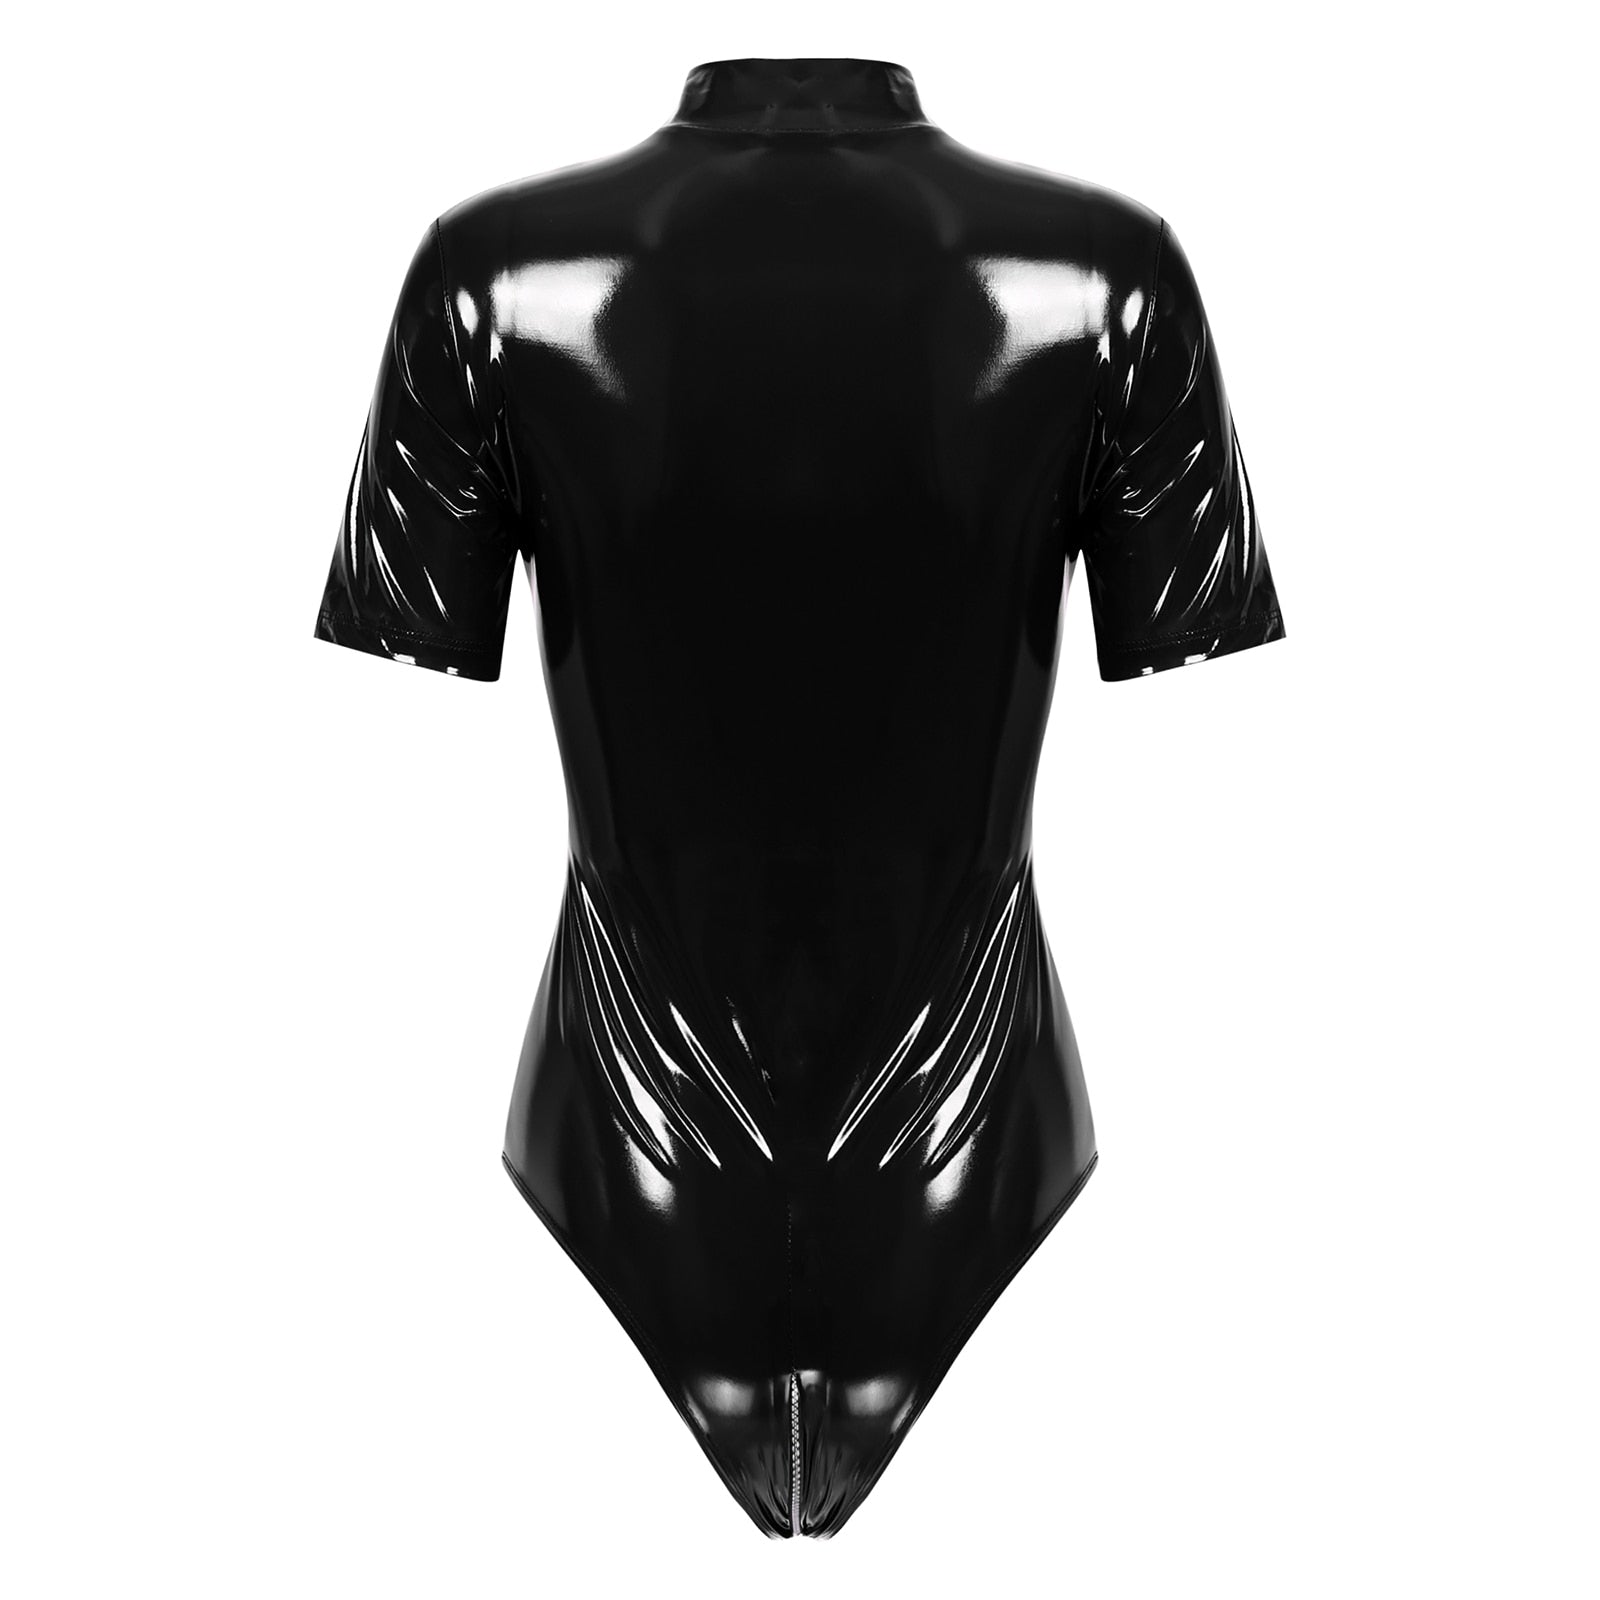 Damen Wet-Look PVC Latex Catsuit - Langärmeliger Clubwear Bodysuit mit Reißverschluss und High-Cut Design für Pole-Dance - undergroundtechnostore.de